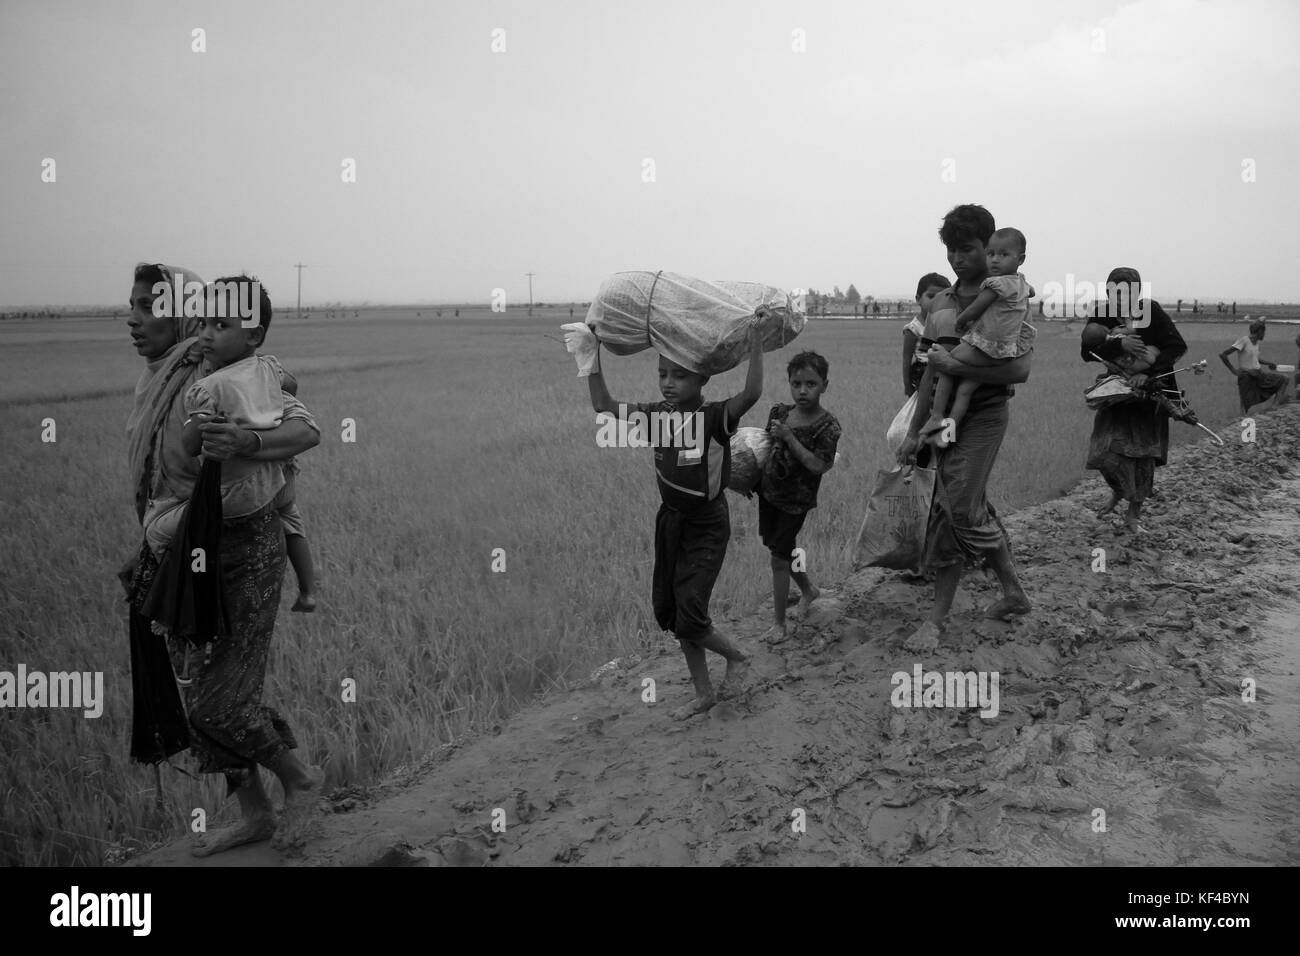 Bangladesh : les réfugiés Rohingya fuyant l'opération militaire dans l'État de Rakhine au Myanmar, a conclu le Bangladesh d'un territoire à se réfugier dans des Cox's Bazar (Bangladesh) le 3 septembre 2017. Plus d'un demi-million de réfugiés Rohingyas de l'État de Rakhine au Myanmar, ont traverse au Bangladesh depuis août 25, 2017 D'après l'ONU. La dernière campagne de l'armée du Myanmar contre les Rohingyas ont débuté après l'attaque sur plusieurs postes de police dans l'État de Rakhine. © Asad Rehman/Alamy Stock Photo Banque D'Images